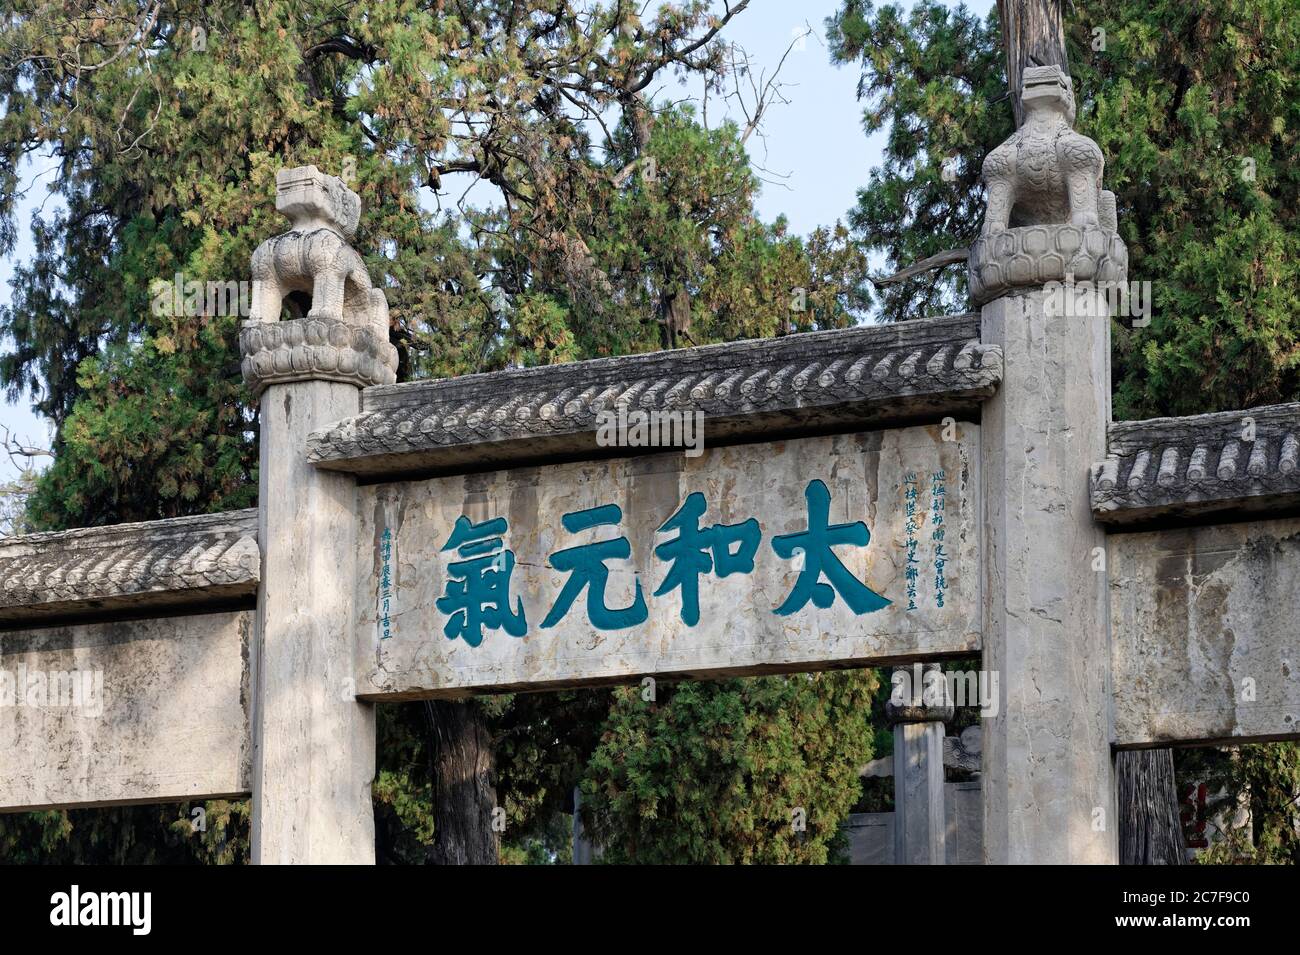 Portail avec des caractères chinois, Temple Confucius, Qufu, Shandong Sheng, Chine Banque D'Images